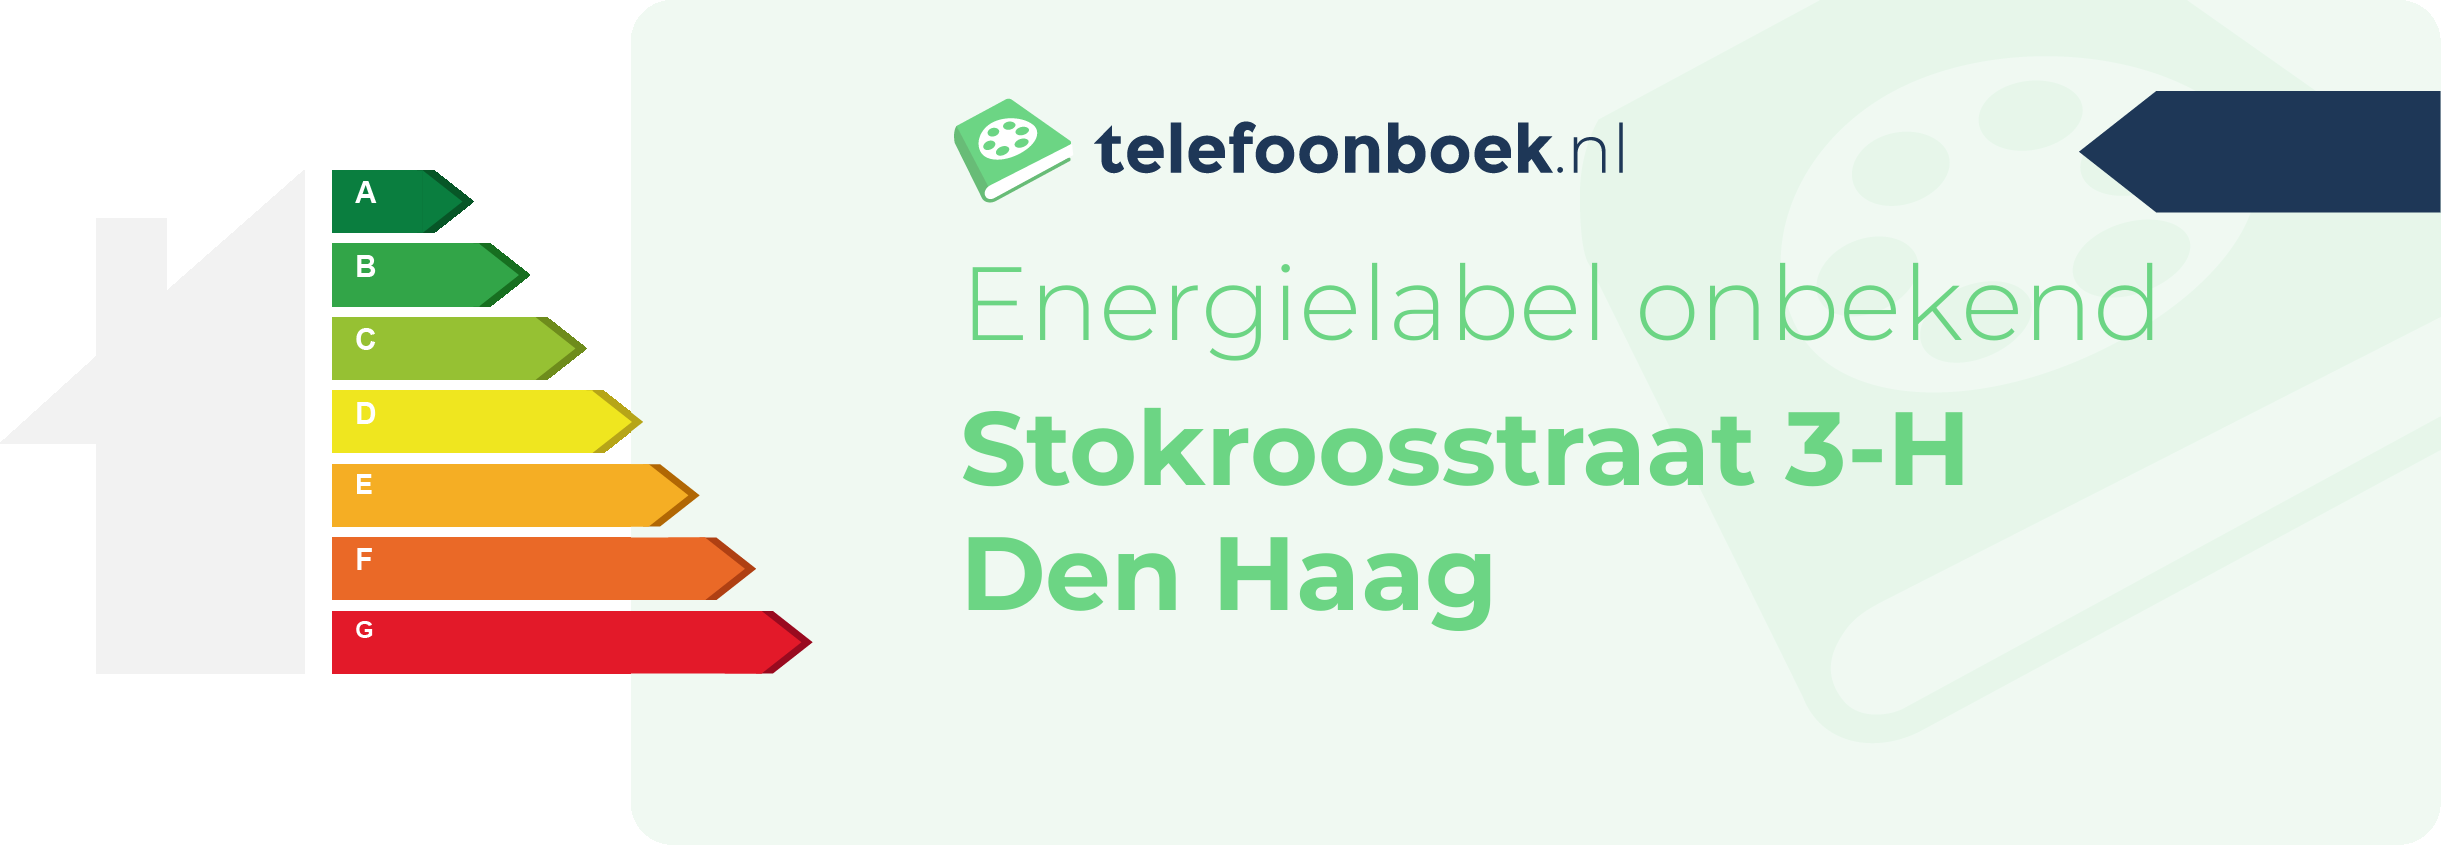 Energielabel Stokroosstraat 3-H Den Haag